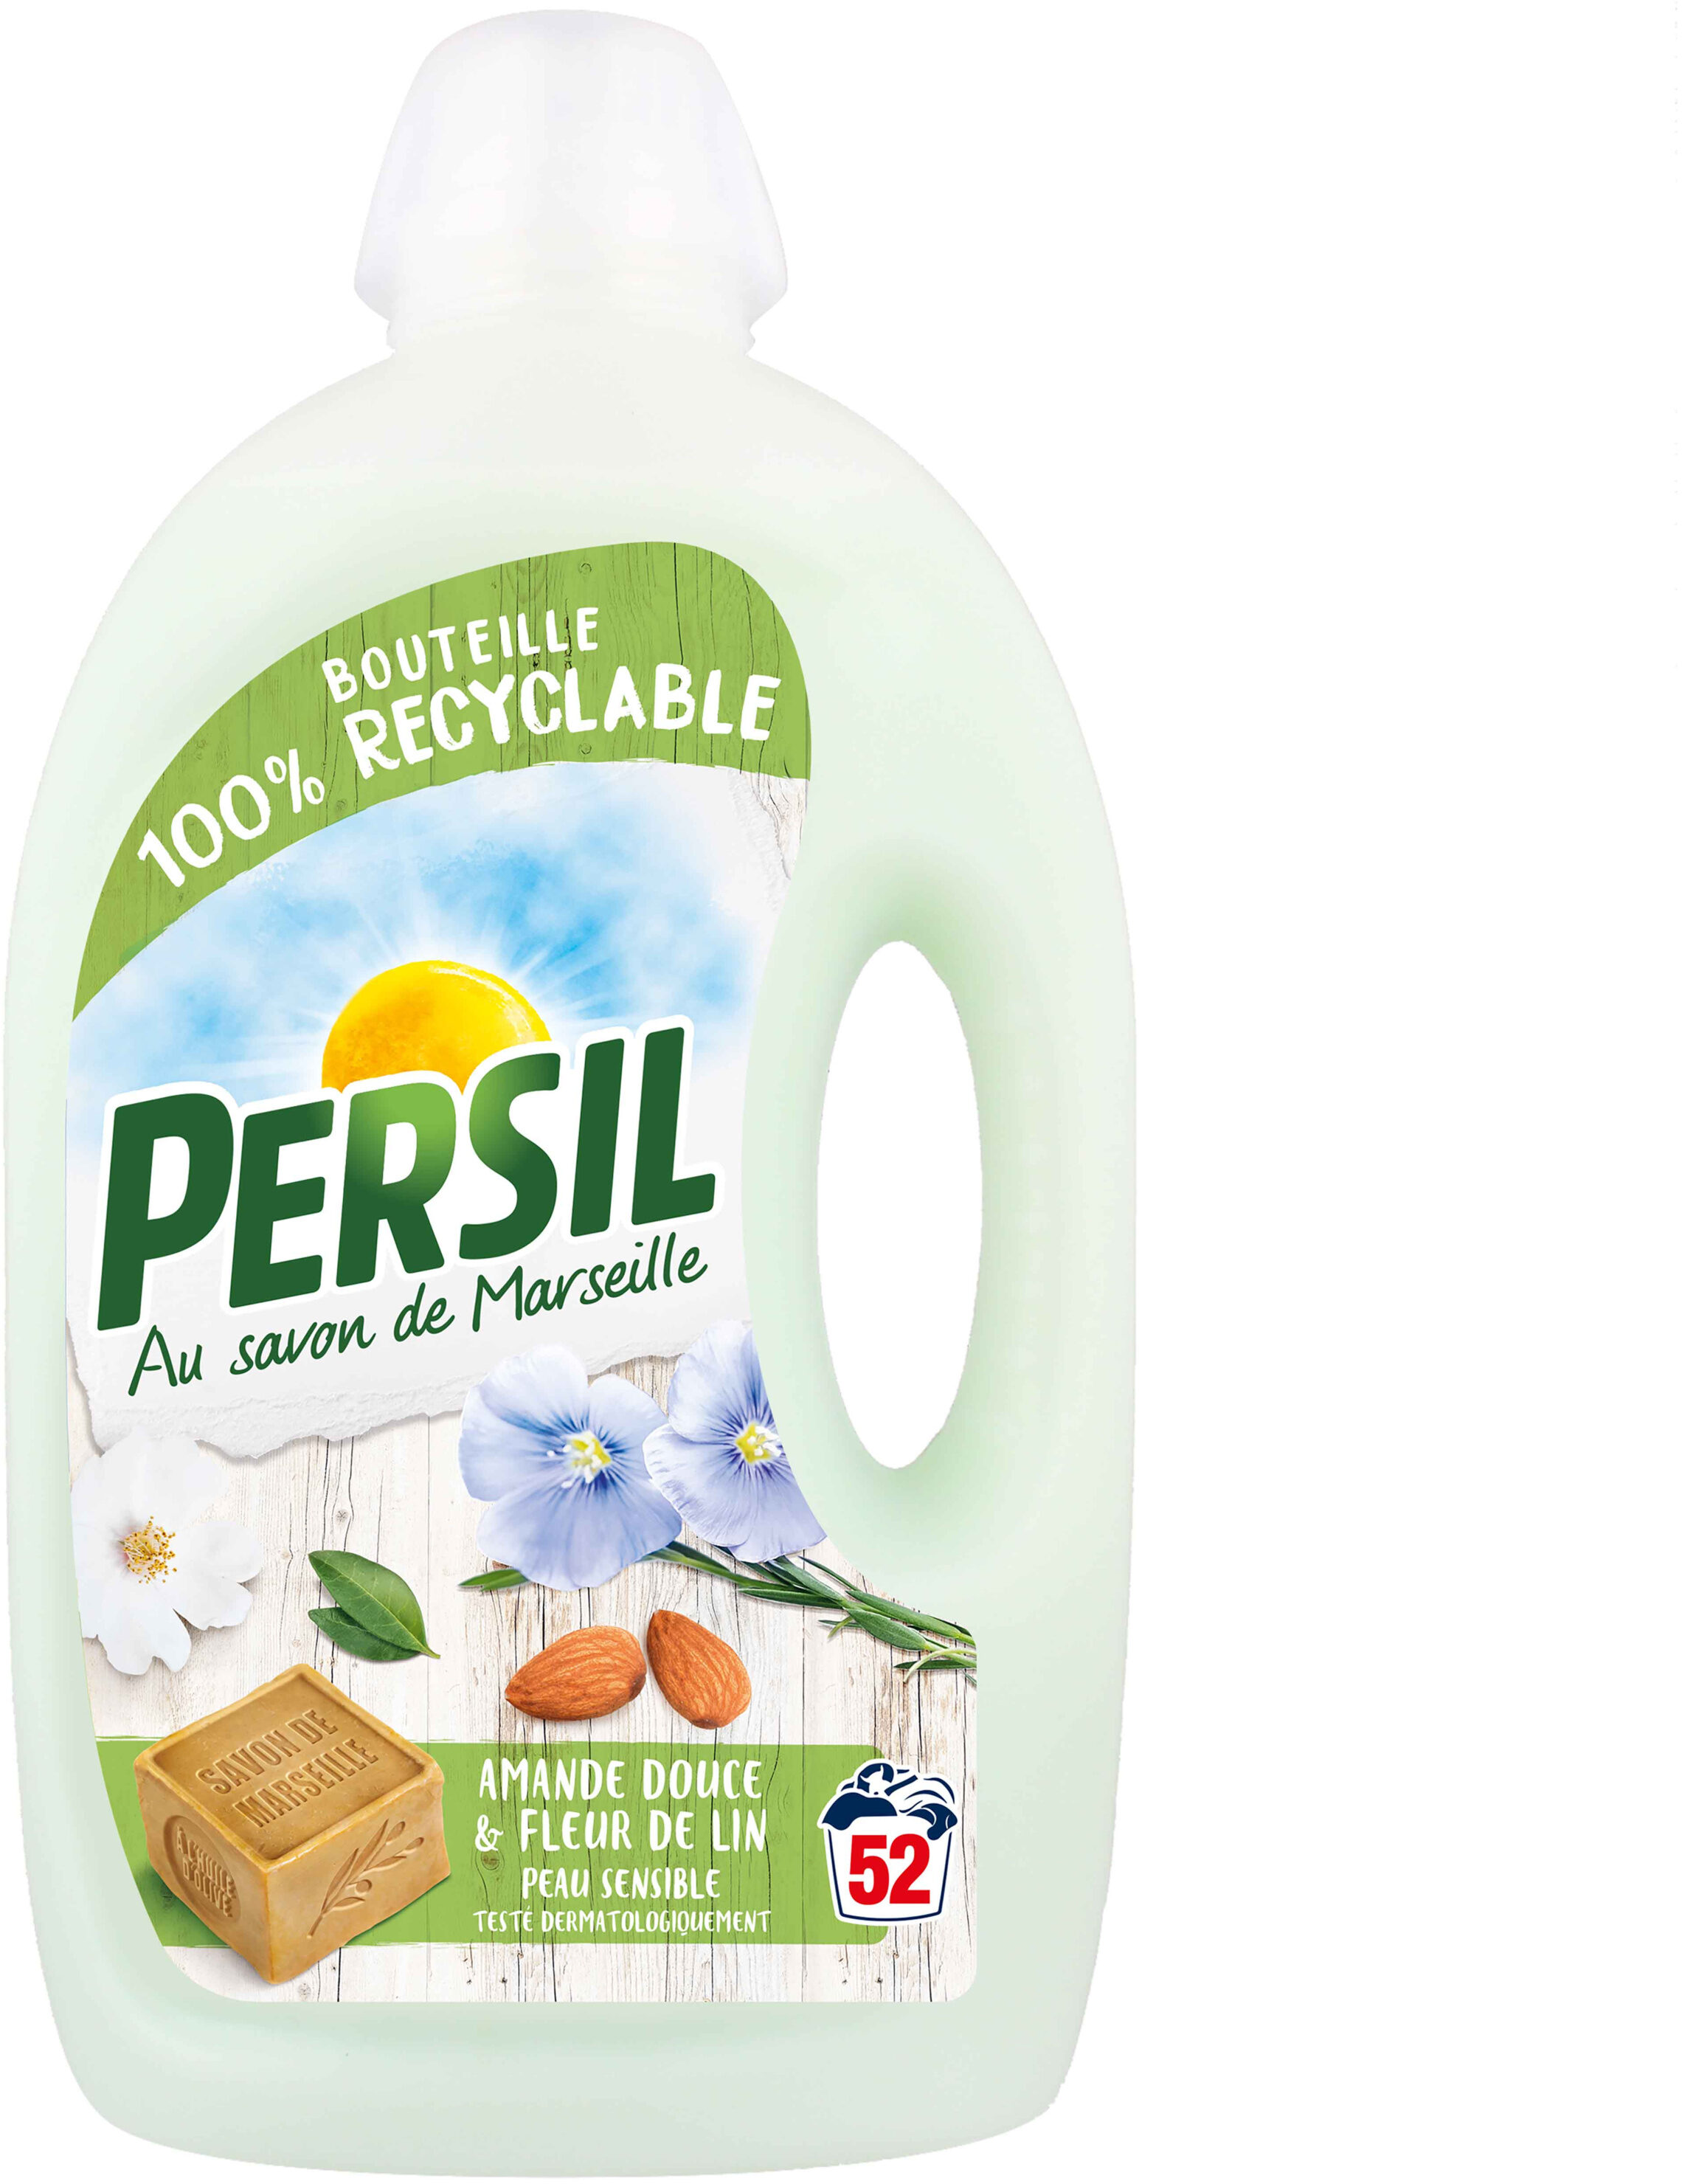 Persil Lessive Liquide Peau Sensible Amande Douce 2,6l 52 Lavages - Product - fr